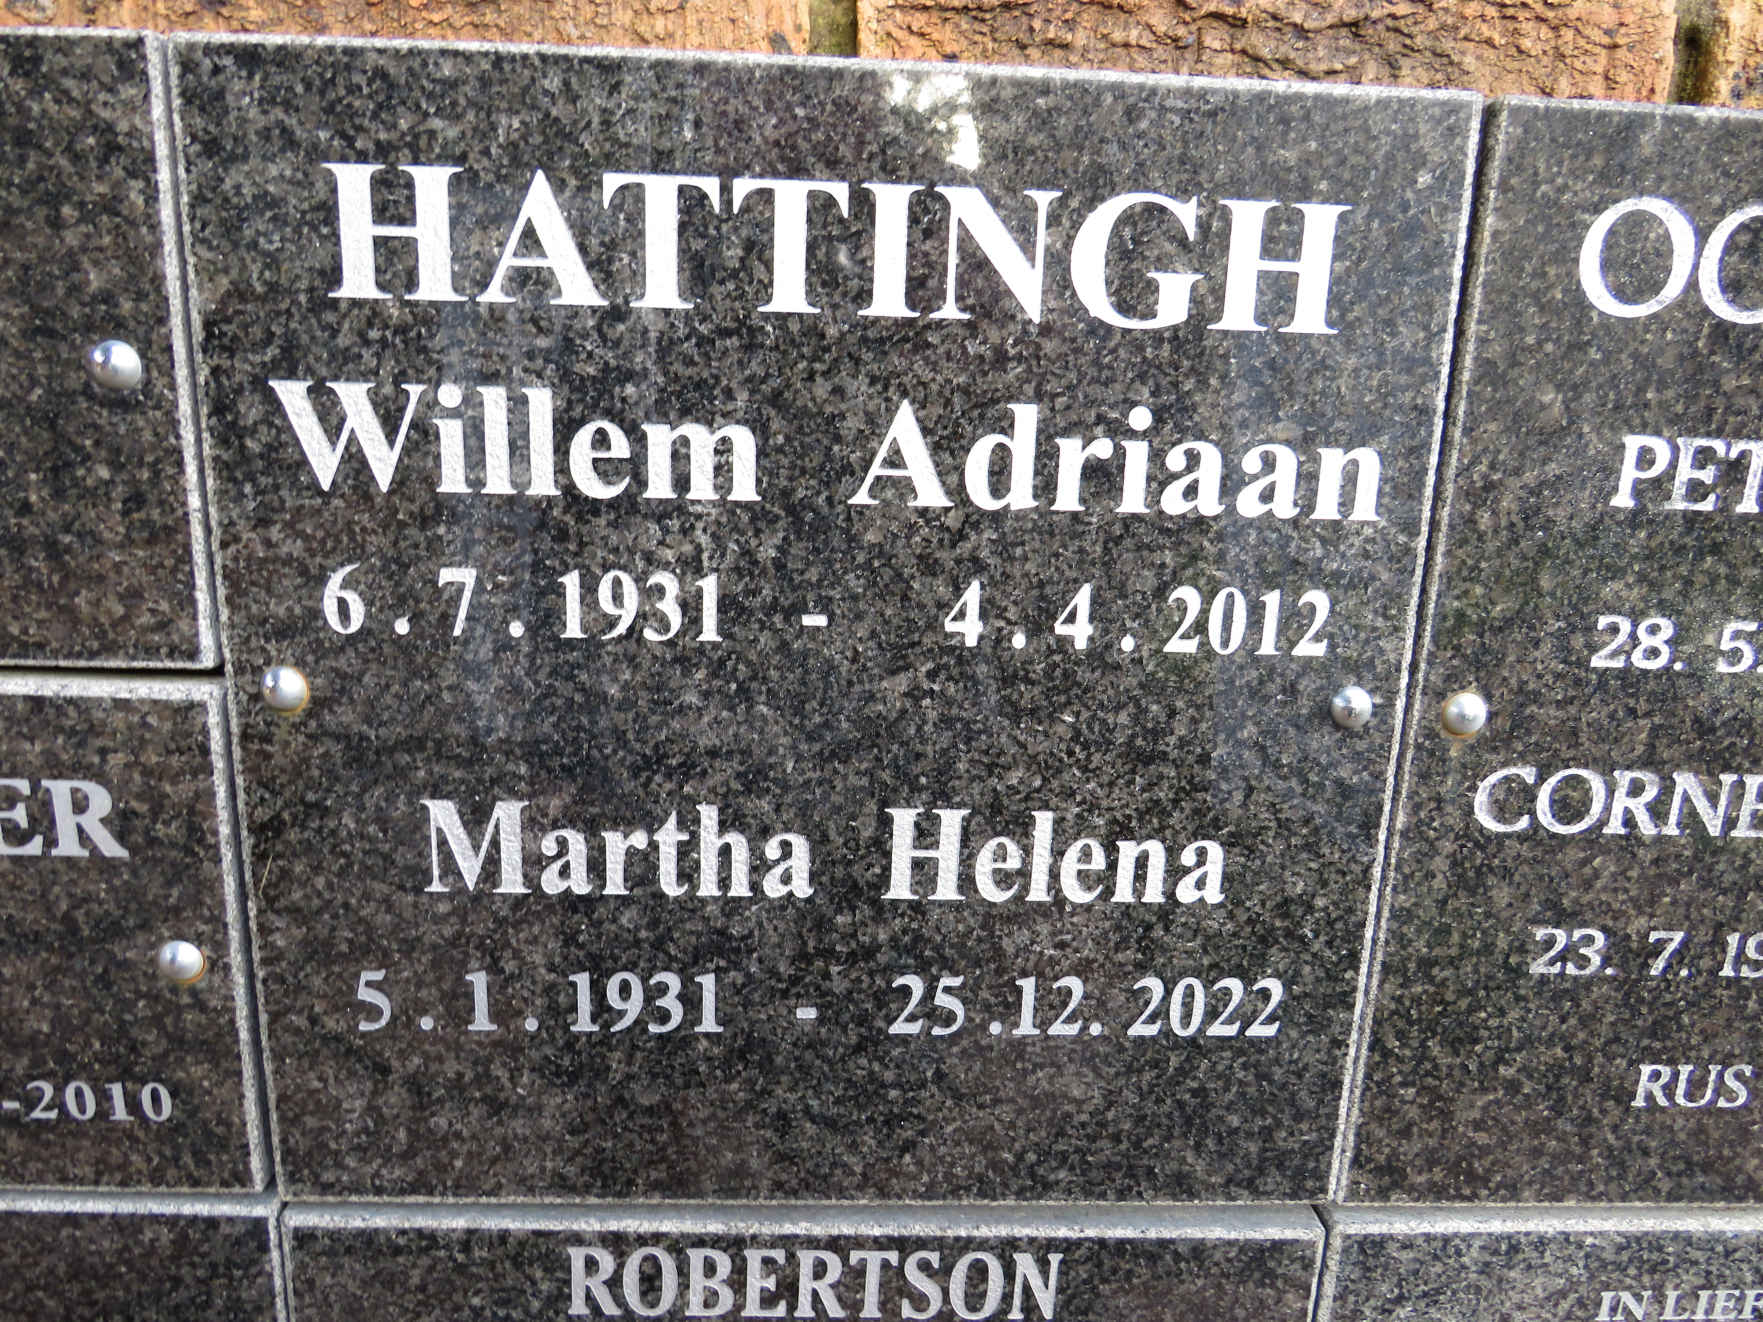 HATTINGH Willem Adriaan 1931-2012 & Martha Helena 1931-2022